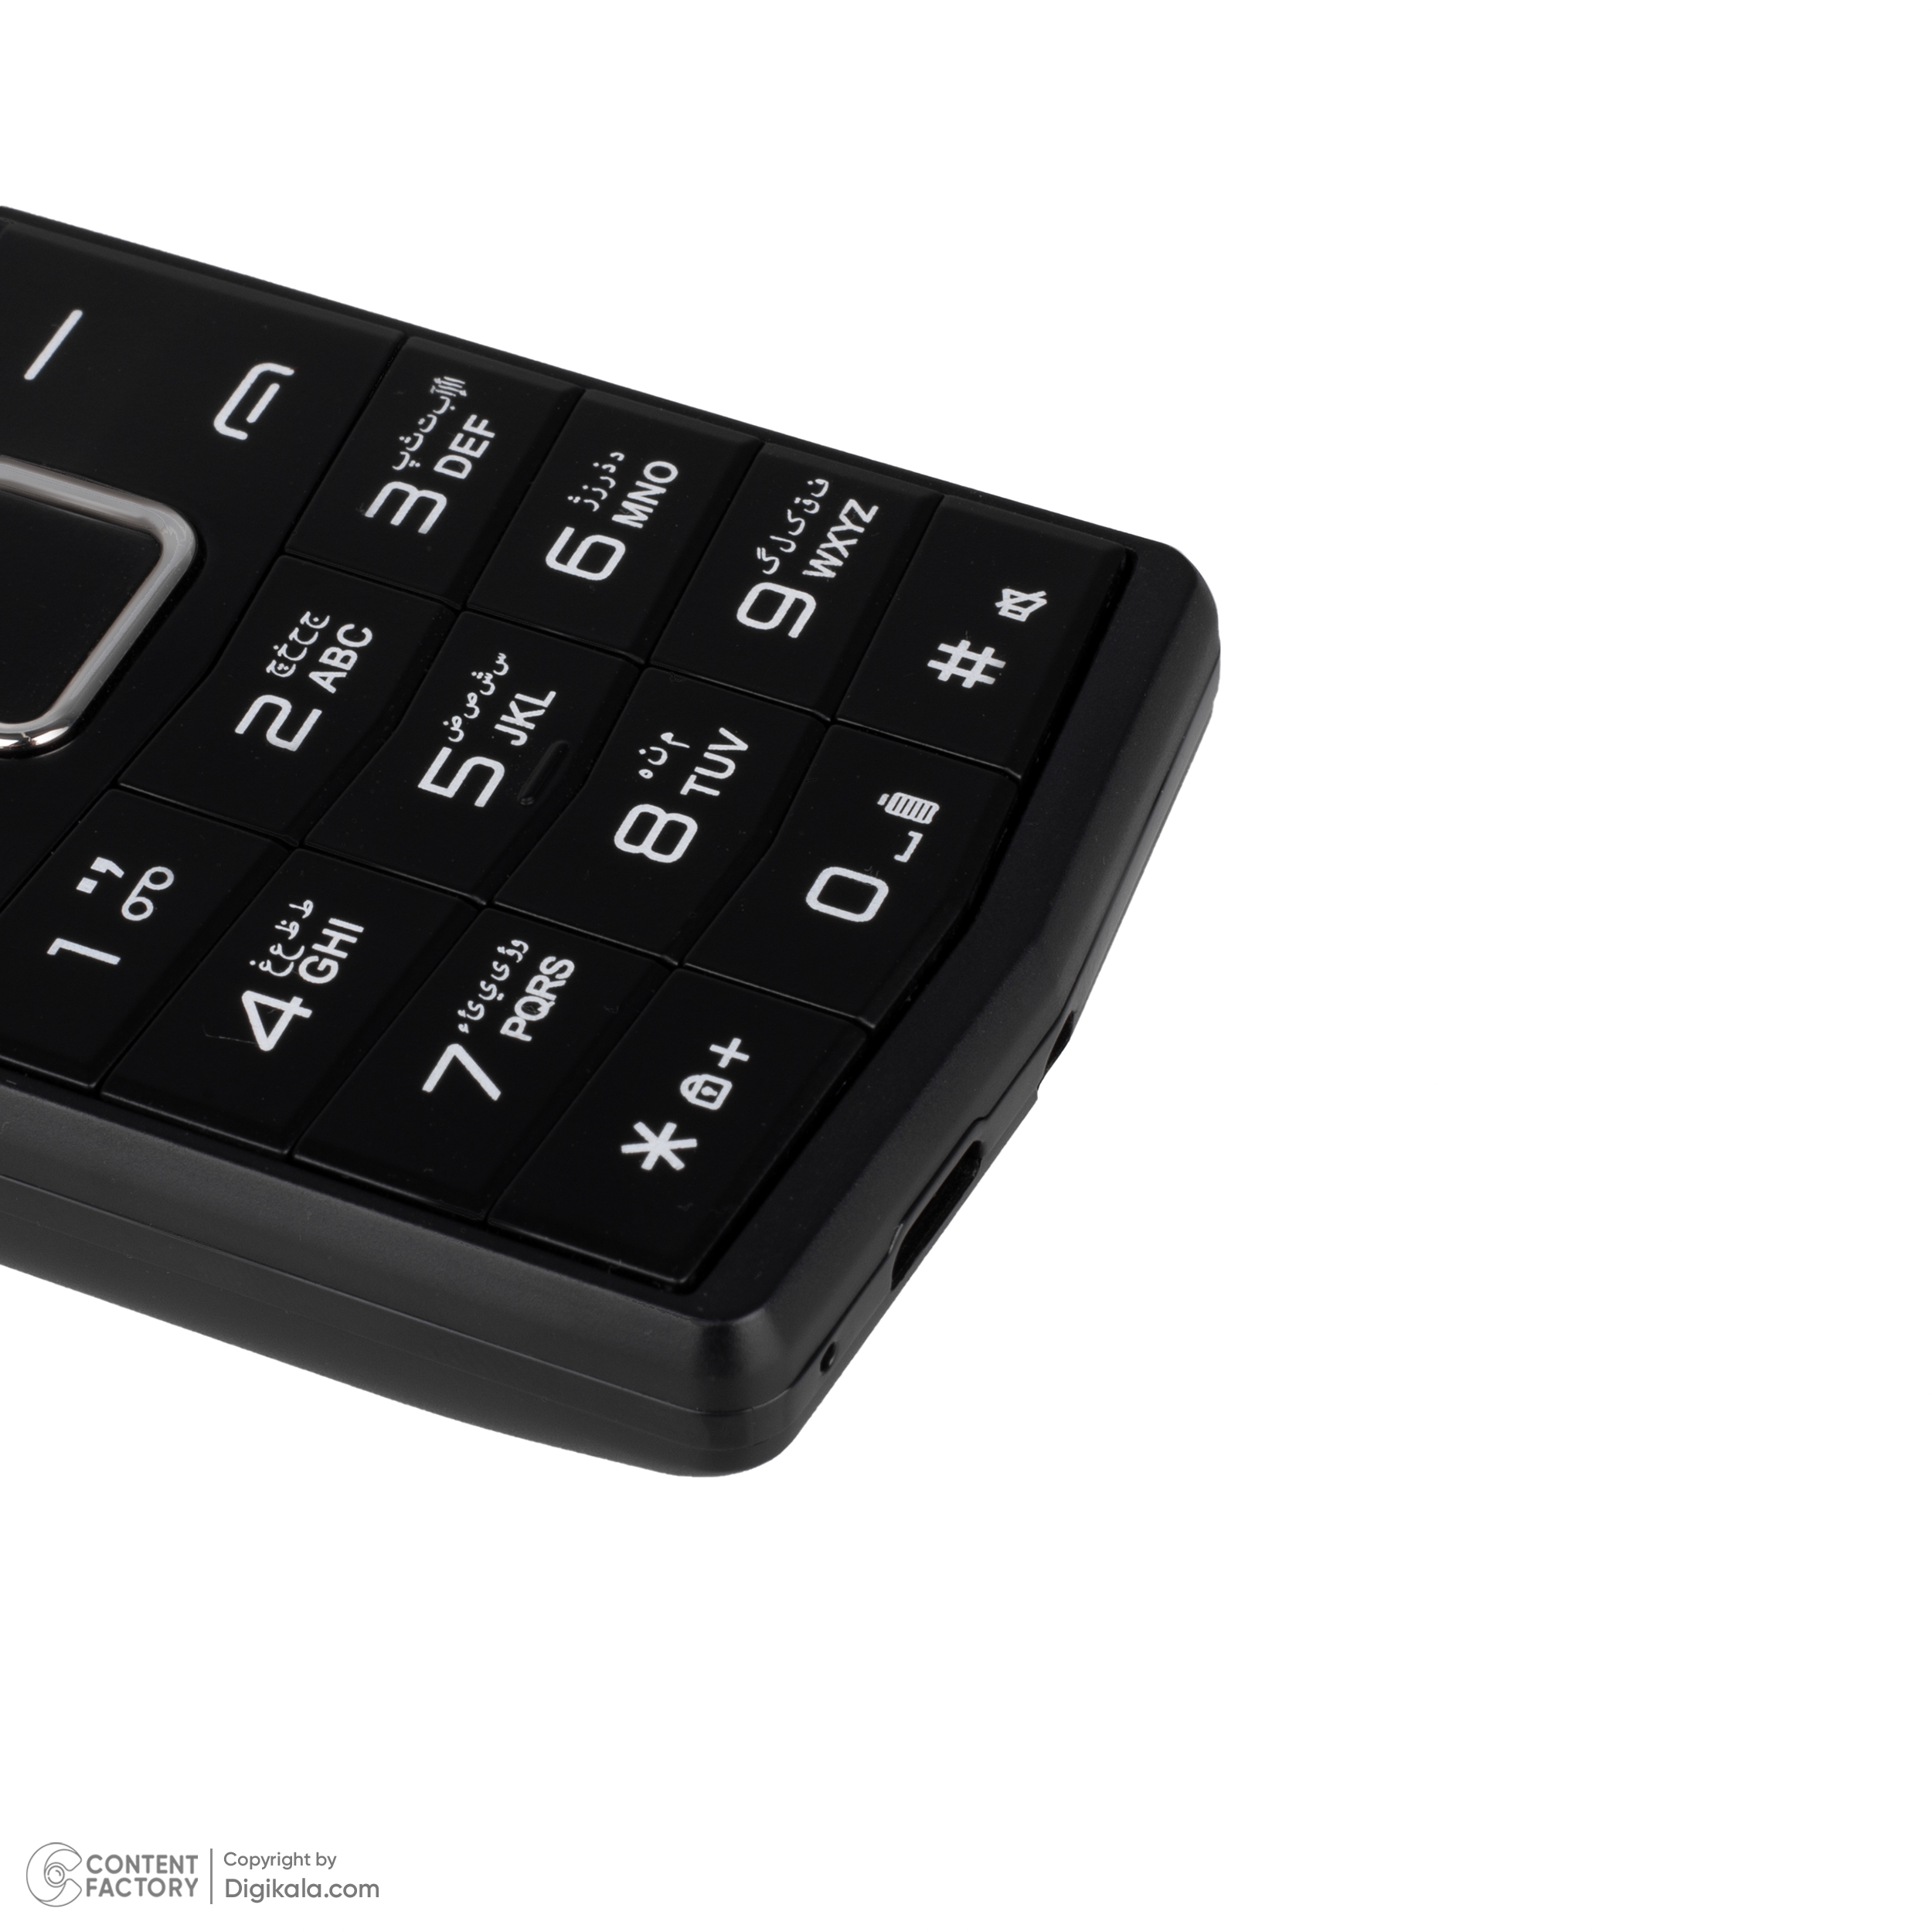 خرید اینترنتی گوشی موبایل جی ال ایکس مدل T352 دو سیم کارت ظرفیت 4 مگابایت و رم4 مگابایت (1402) - فروشگاه دیگسون